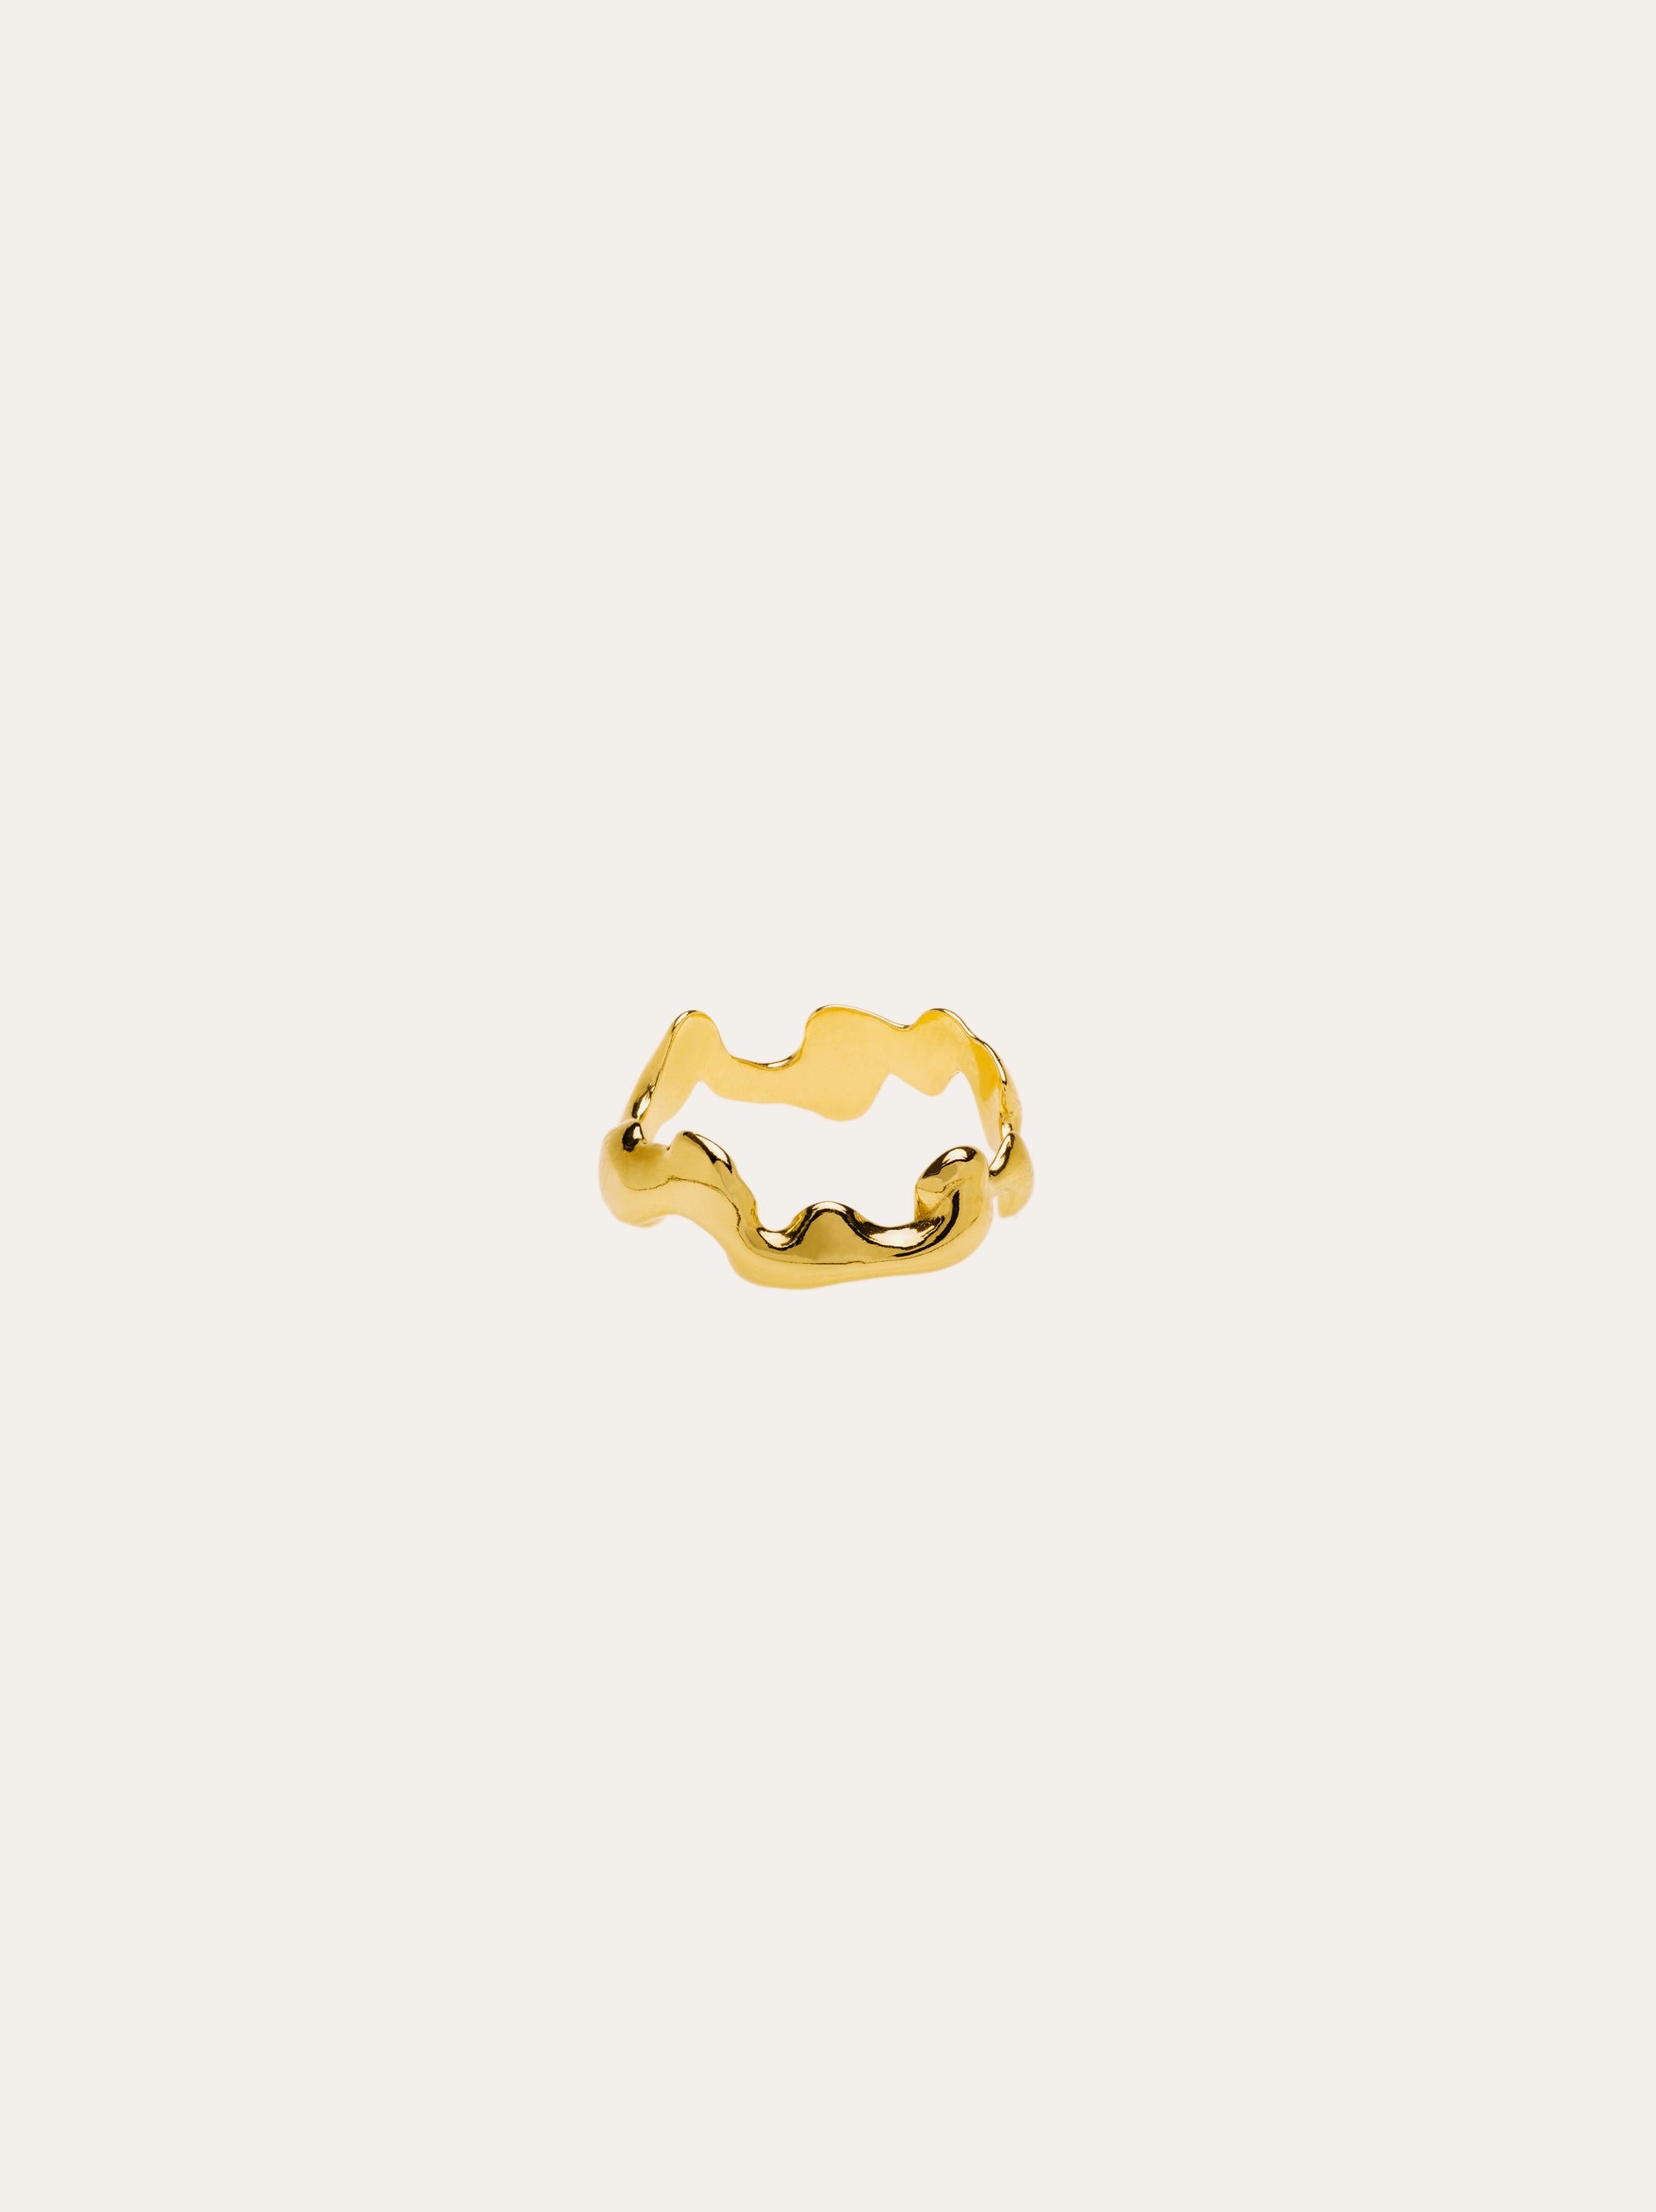 Himmin ring 18k gold - IDAMARI